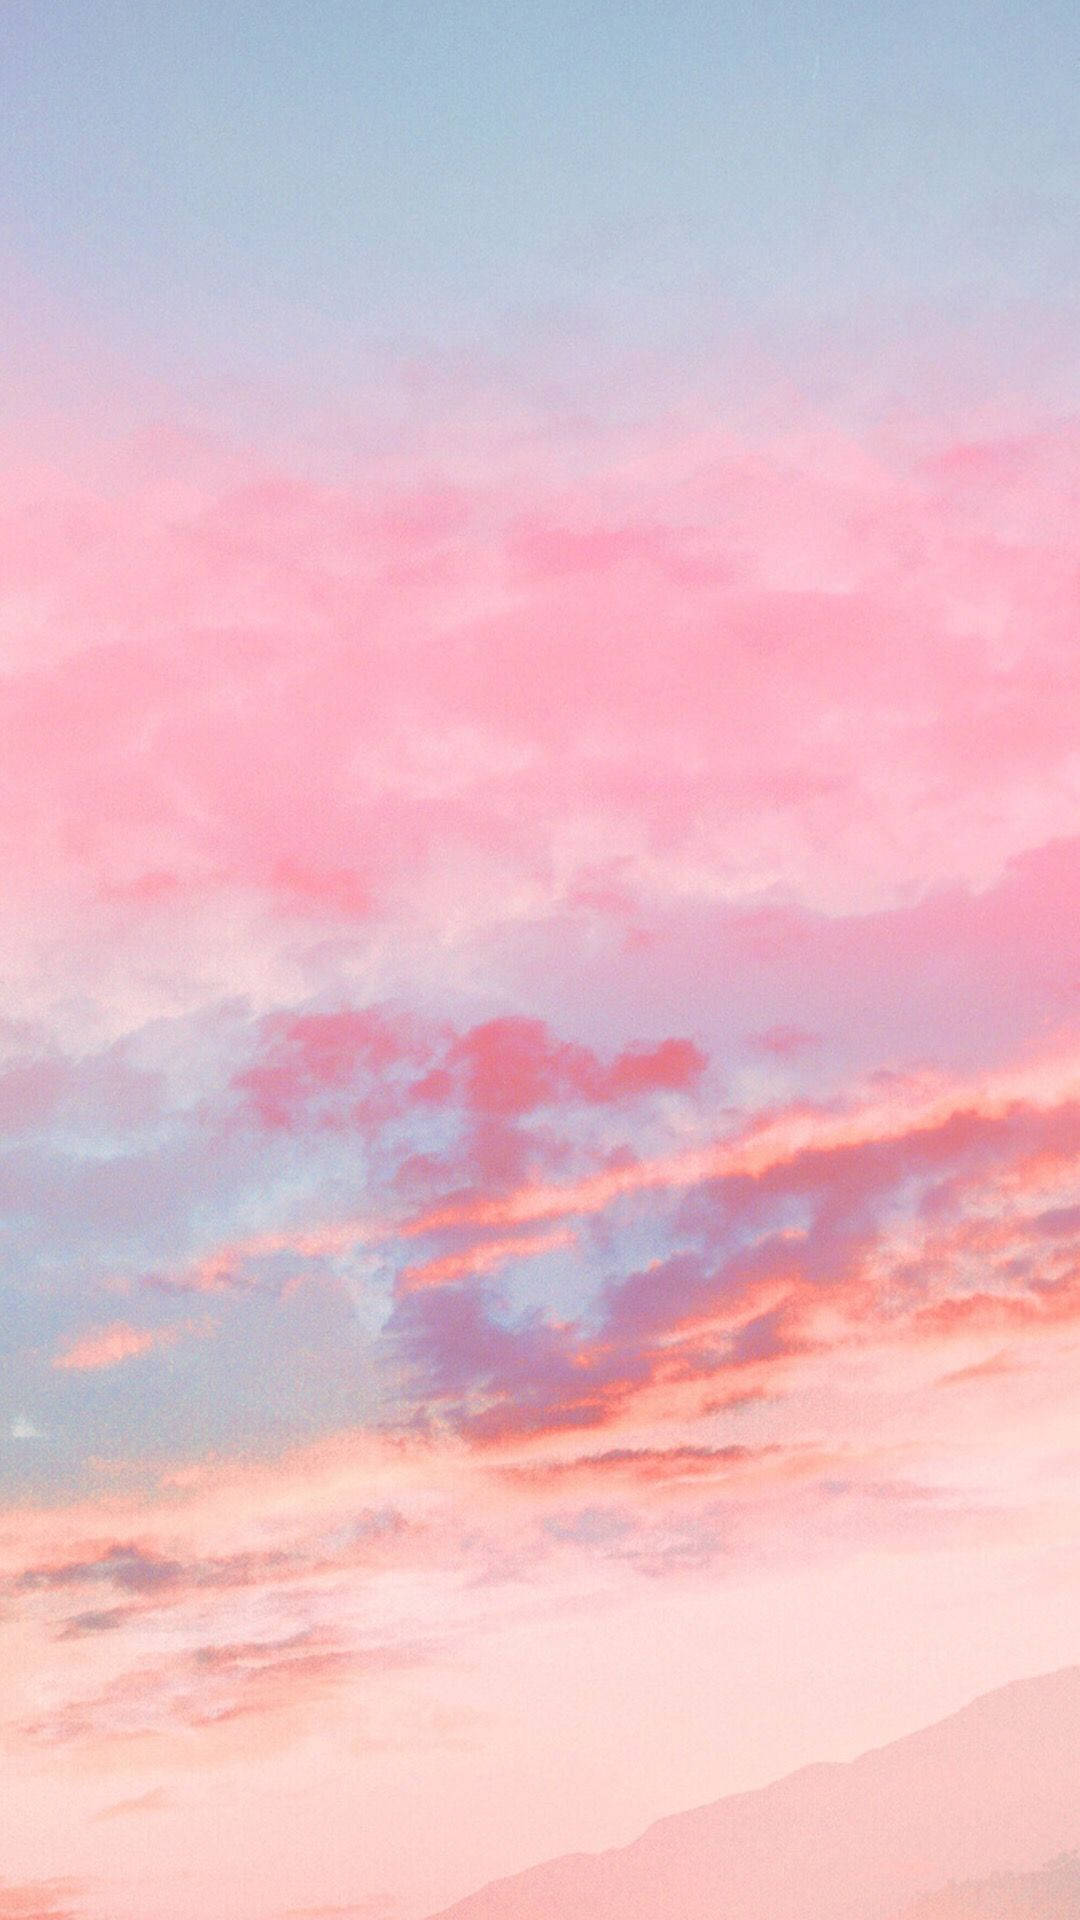 Caption: Exquisite Pastel Pink iPhone Wallpaper Wallpaper